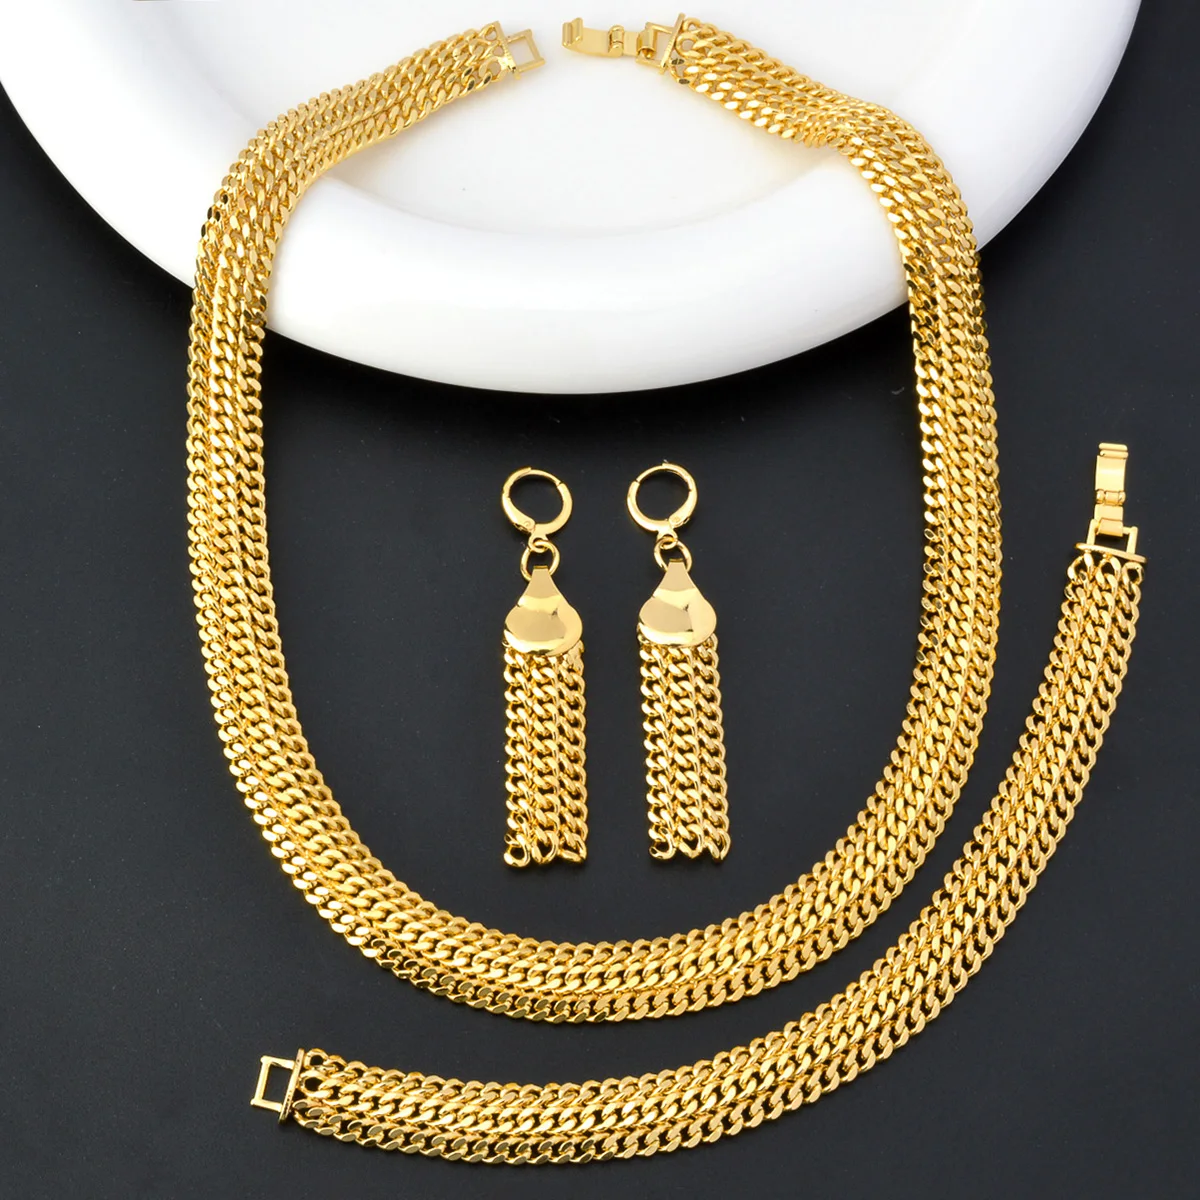 

ZEADear Jewelry Set Chain Necklace Bracelet Earring for Women Men Twist Cross Link Chain Punk Fashion Jewellery Accessories Gift